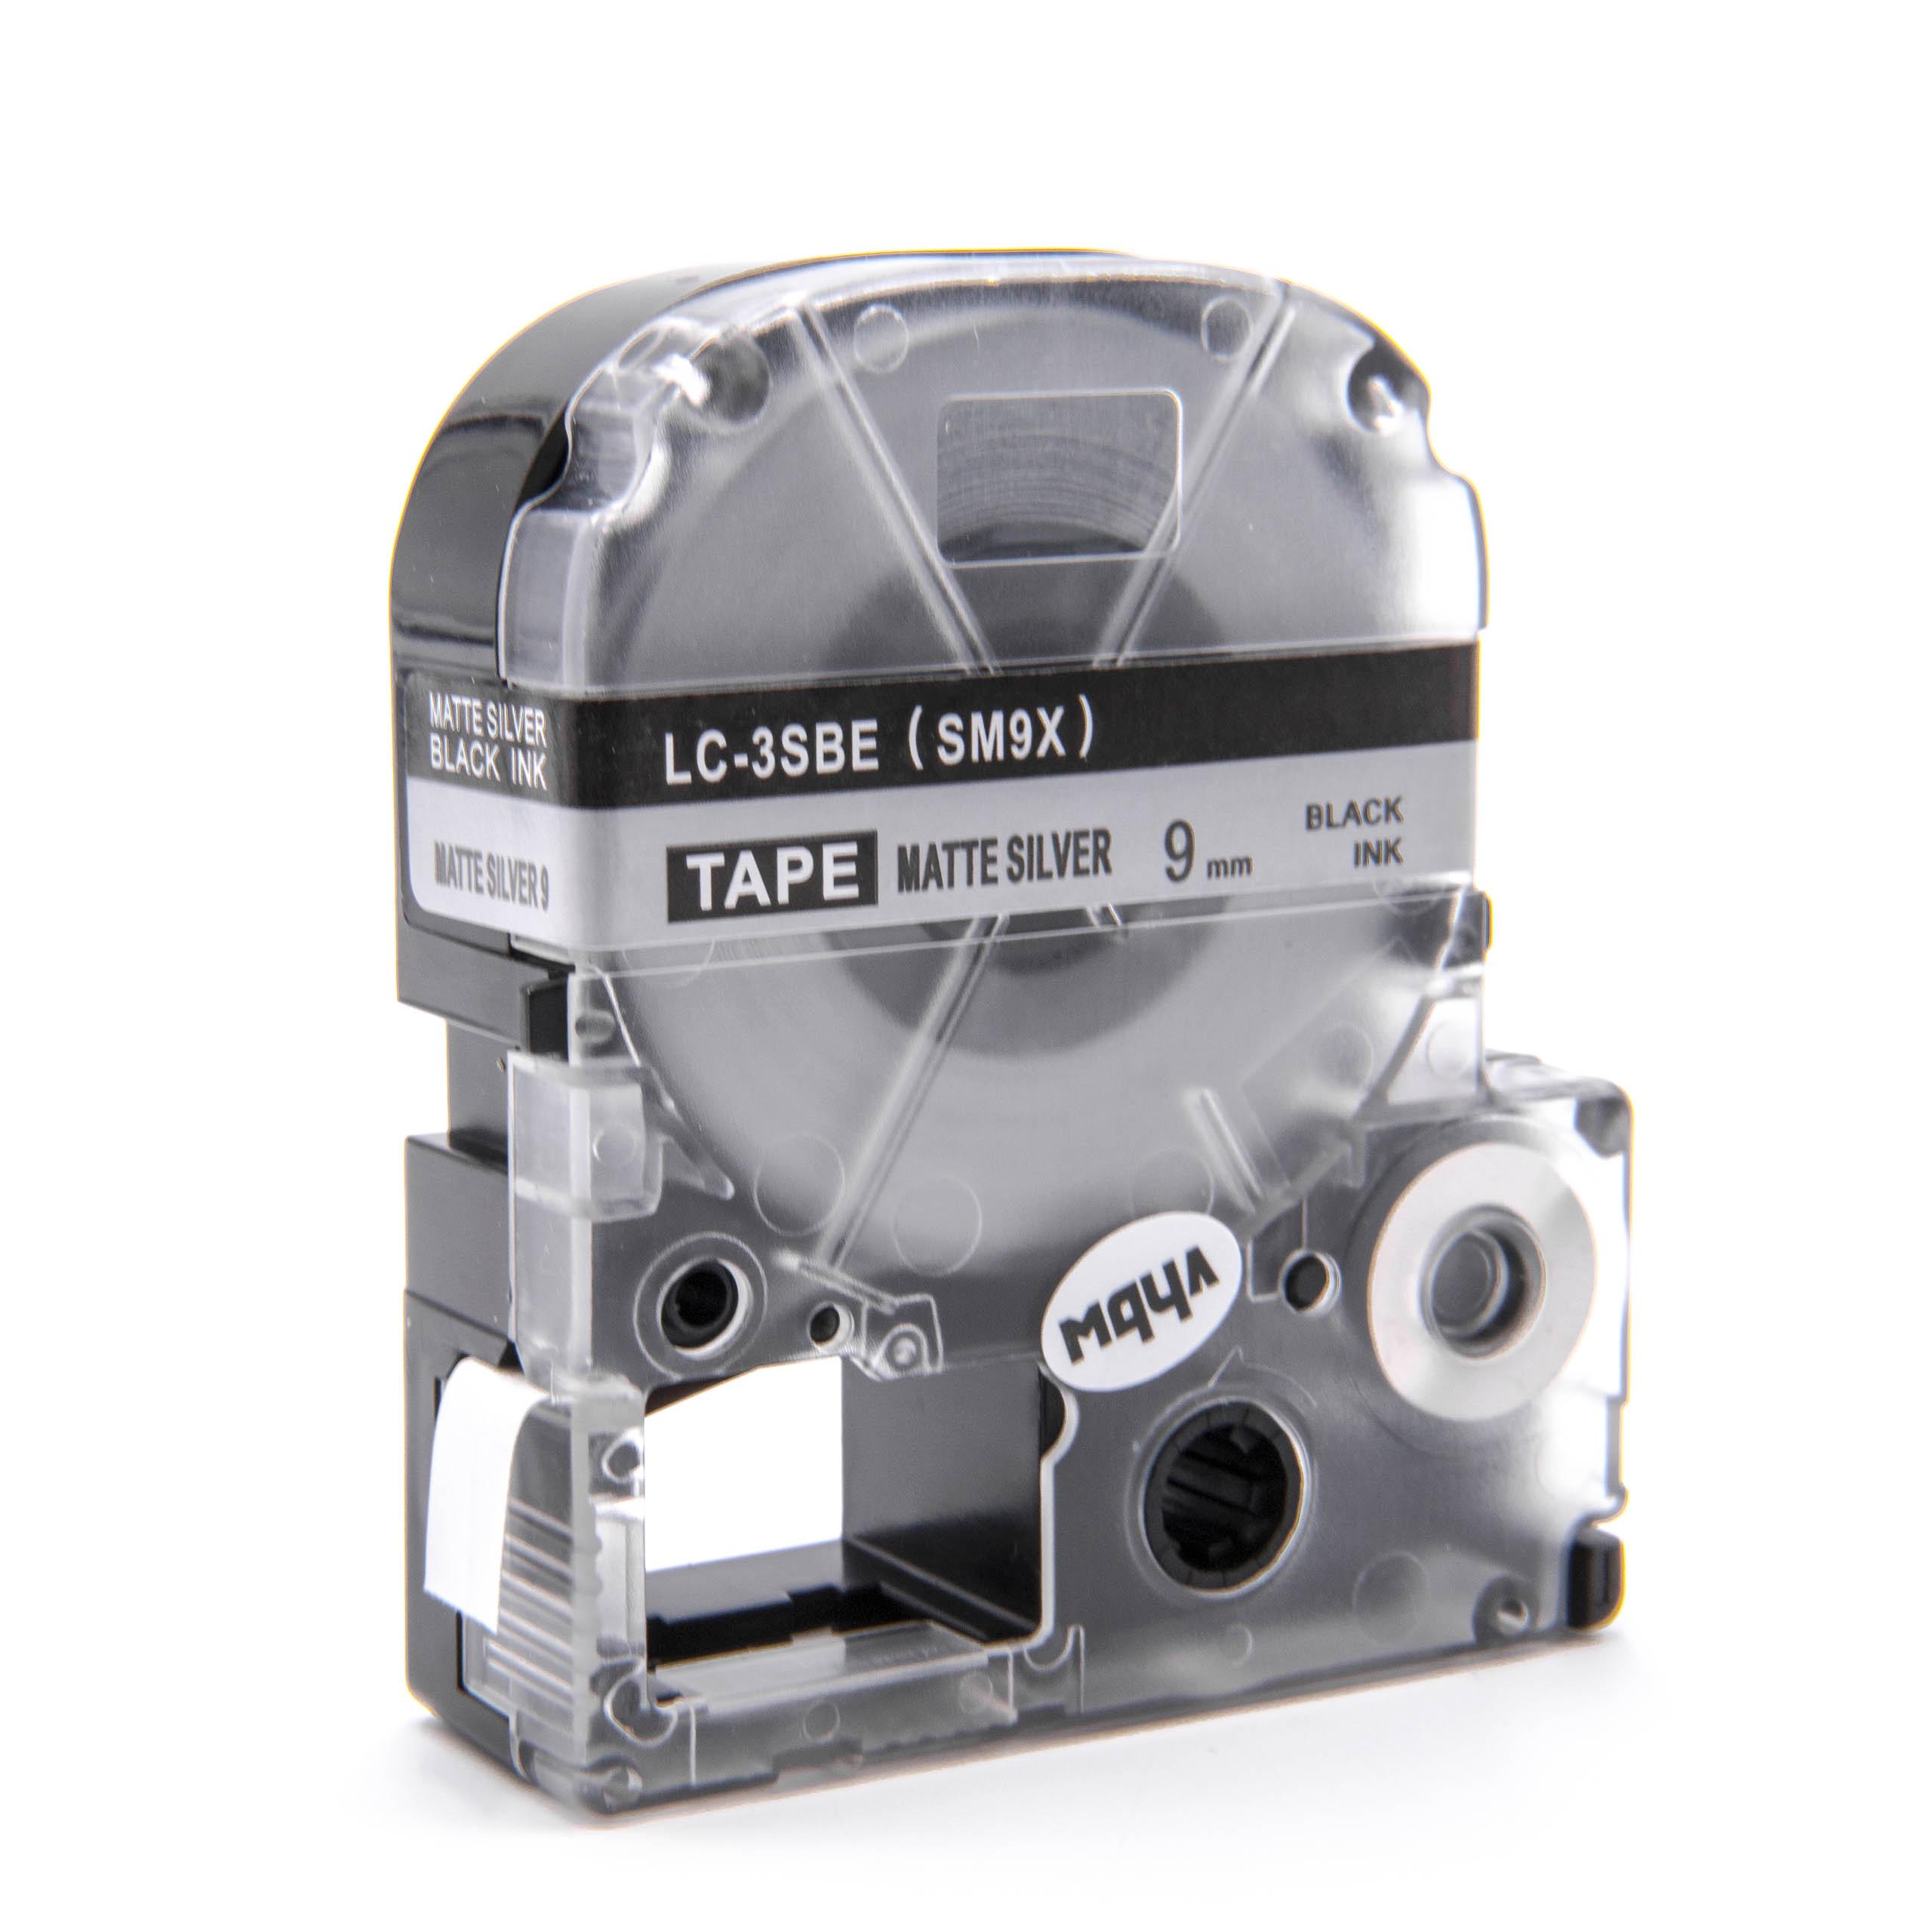 Cassetta nastro sostituisce Epson LC-3SBE per etichettatrice Epson 9mm nero su argentato